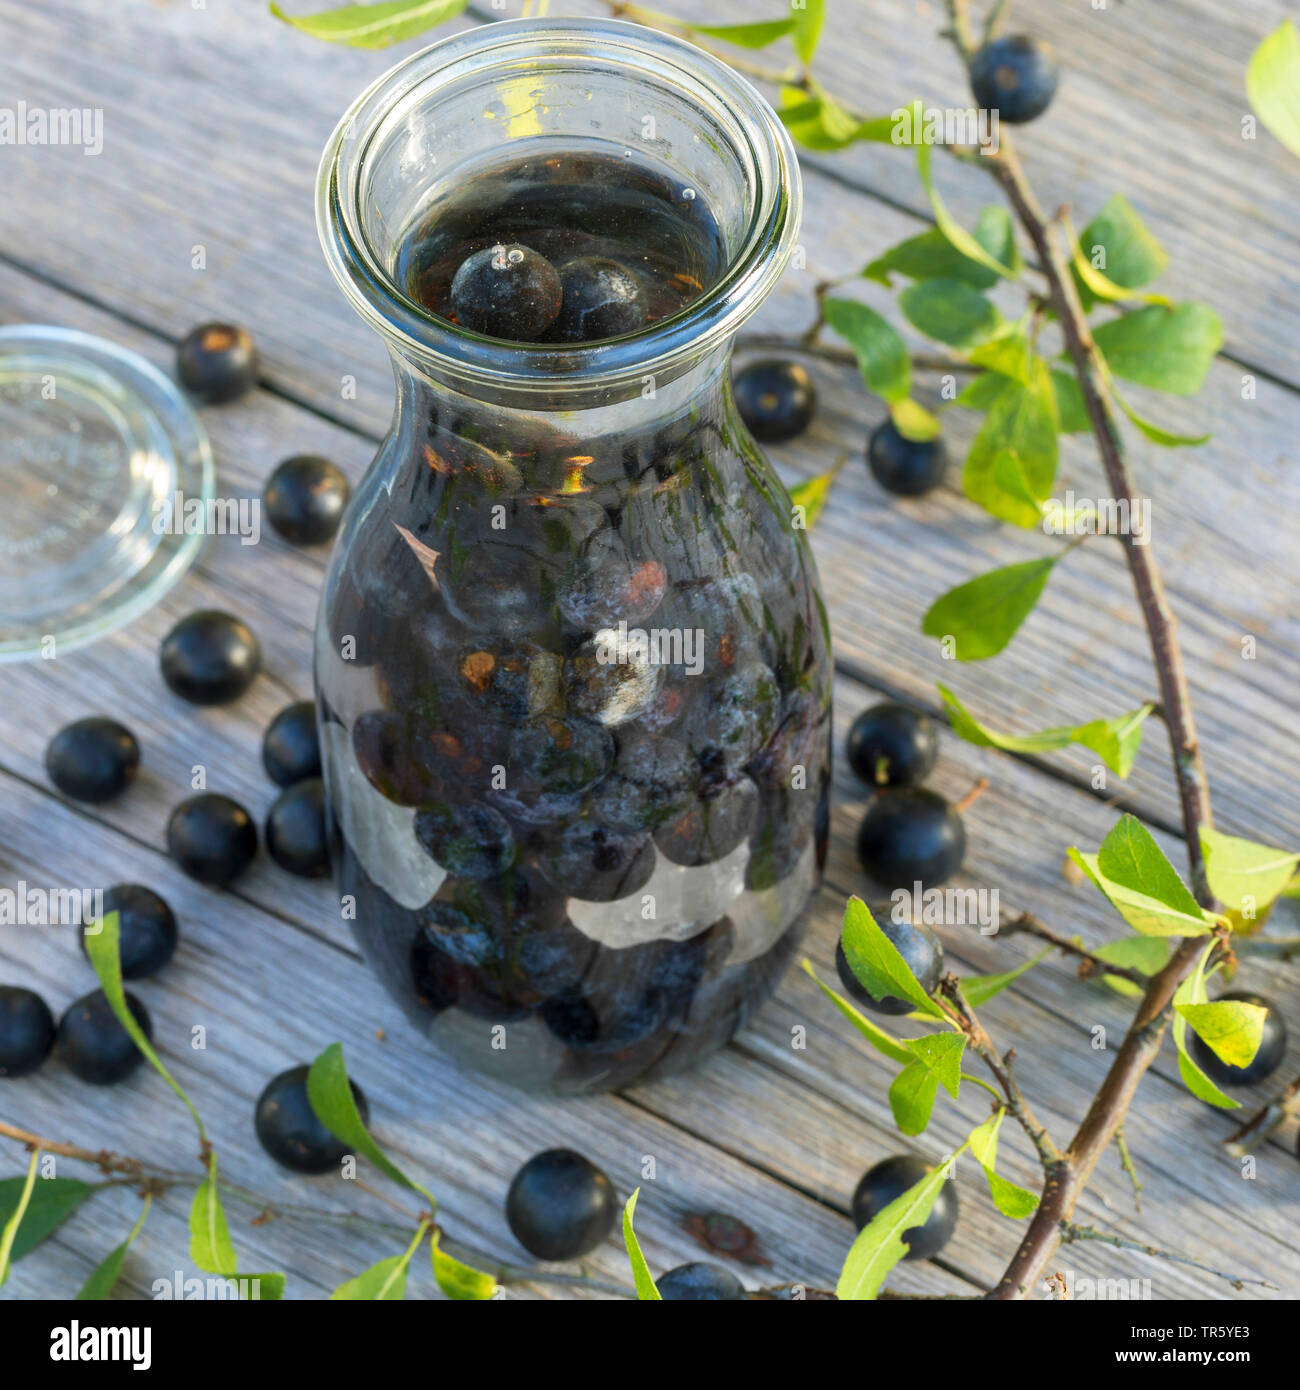 blackthorn, sloe (Prunus spinosa), selbmade sloe liqueur, Germany Stock Photo